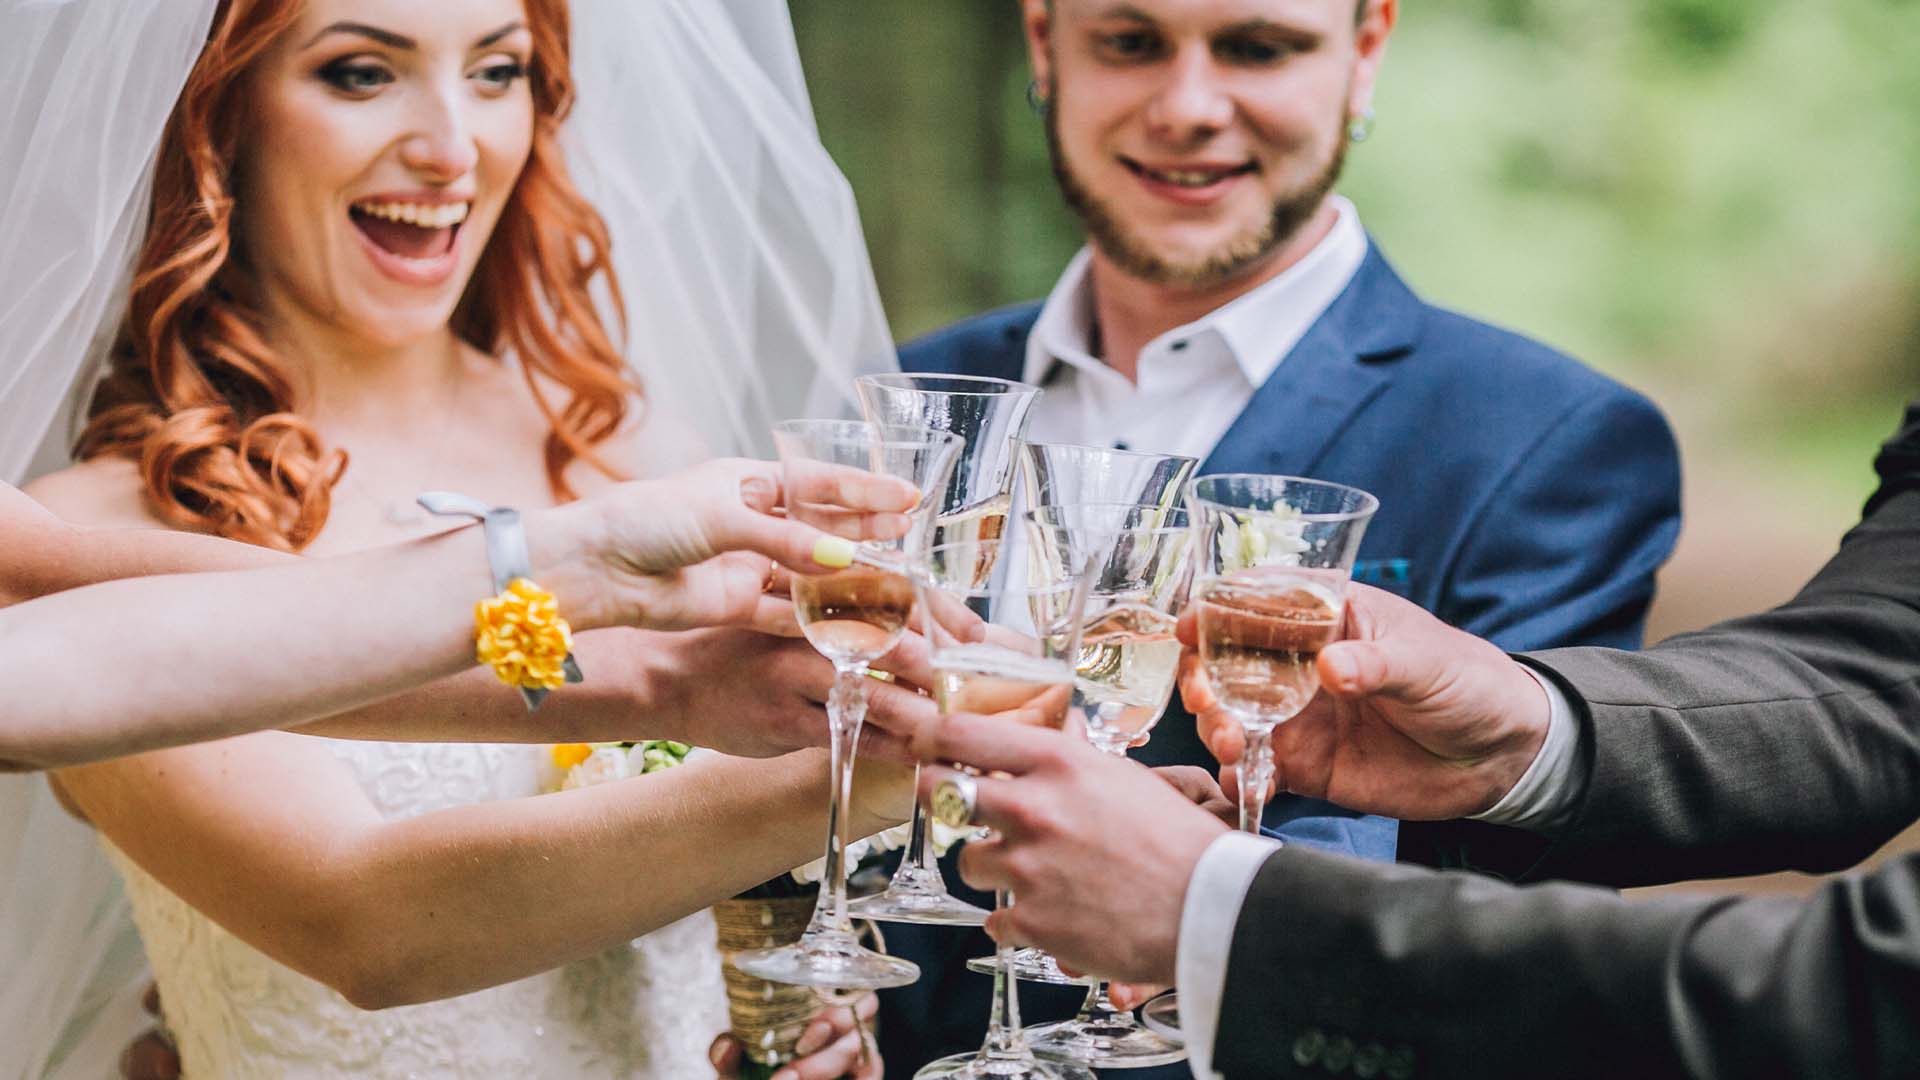 Ľudia sa podelili o príhody s drzými hosťami, ktorým museli čeliť na vlastnej svadbe